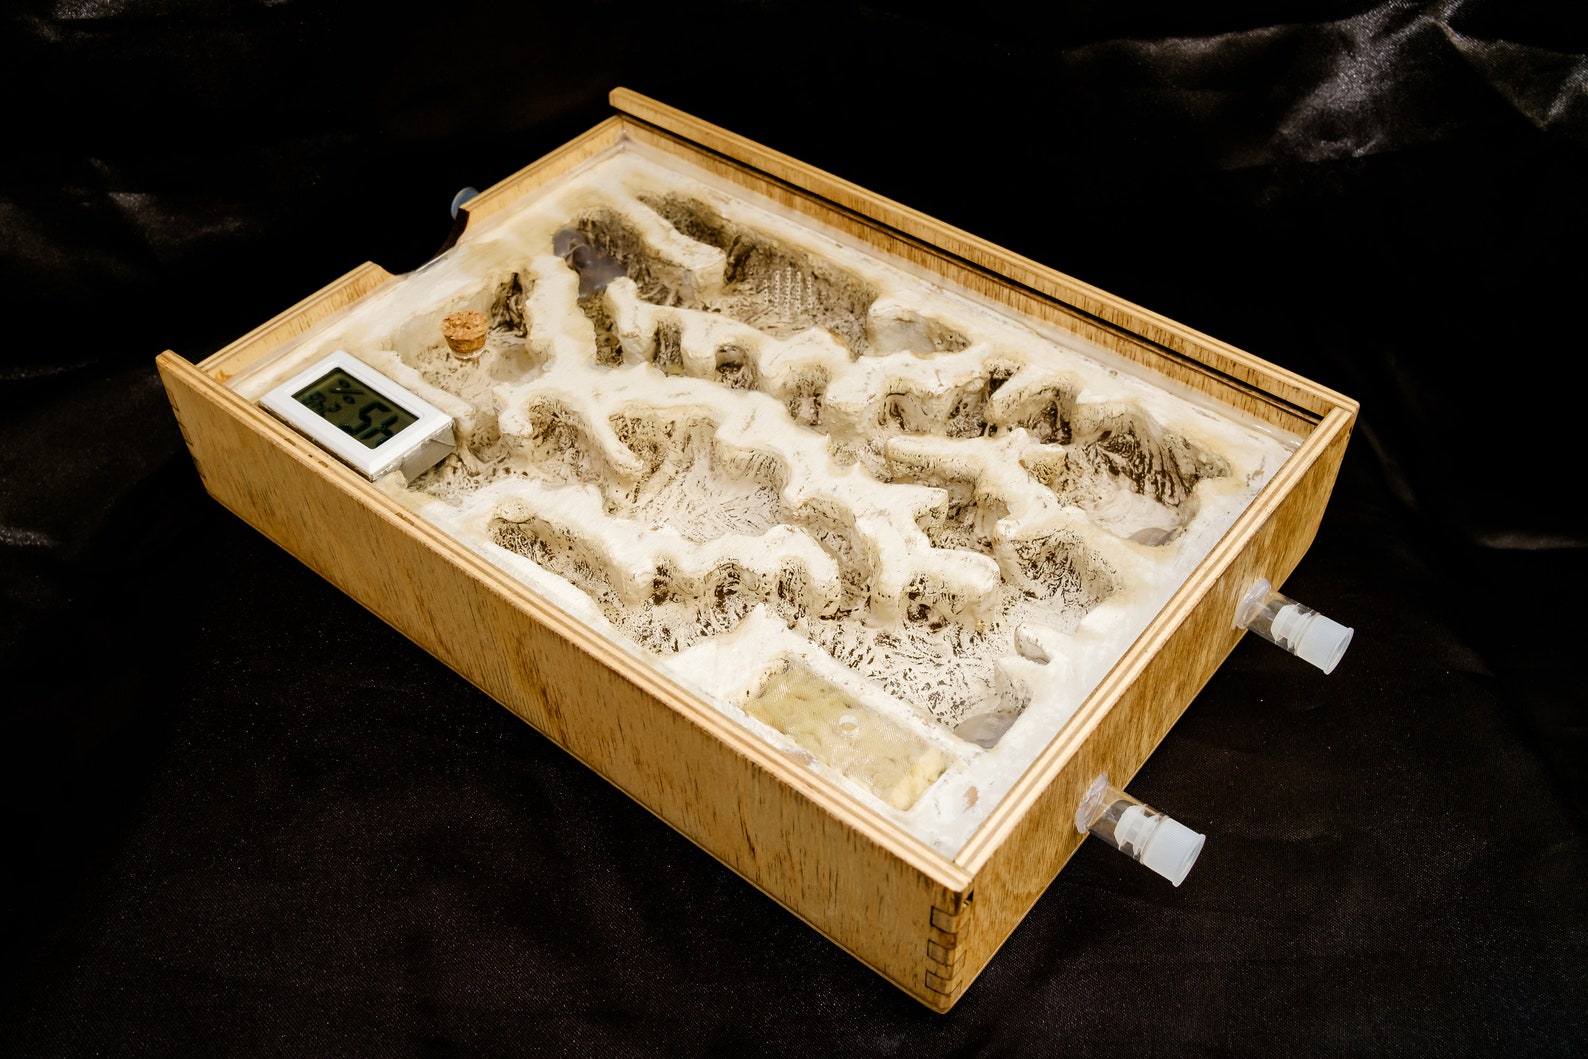 Große Holz Ameise Hybrid Nest Ant Gehäuse Ant Farm